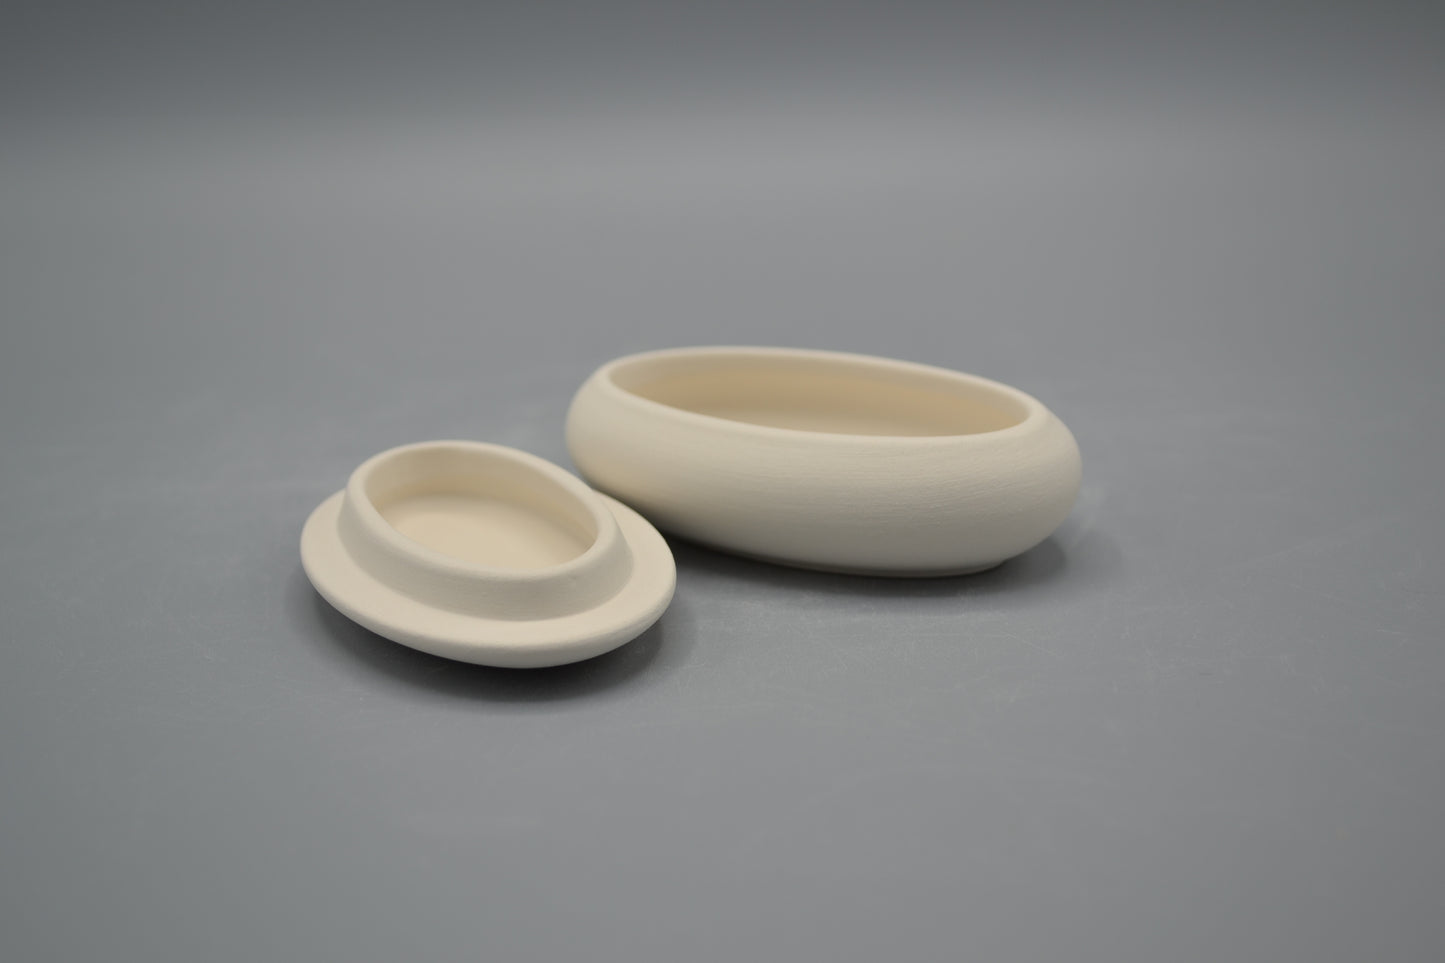 Scatolina ovale bombata in ceramica semilavorata GREZZA da dipingere